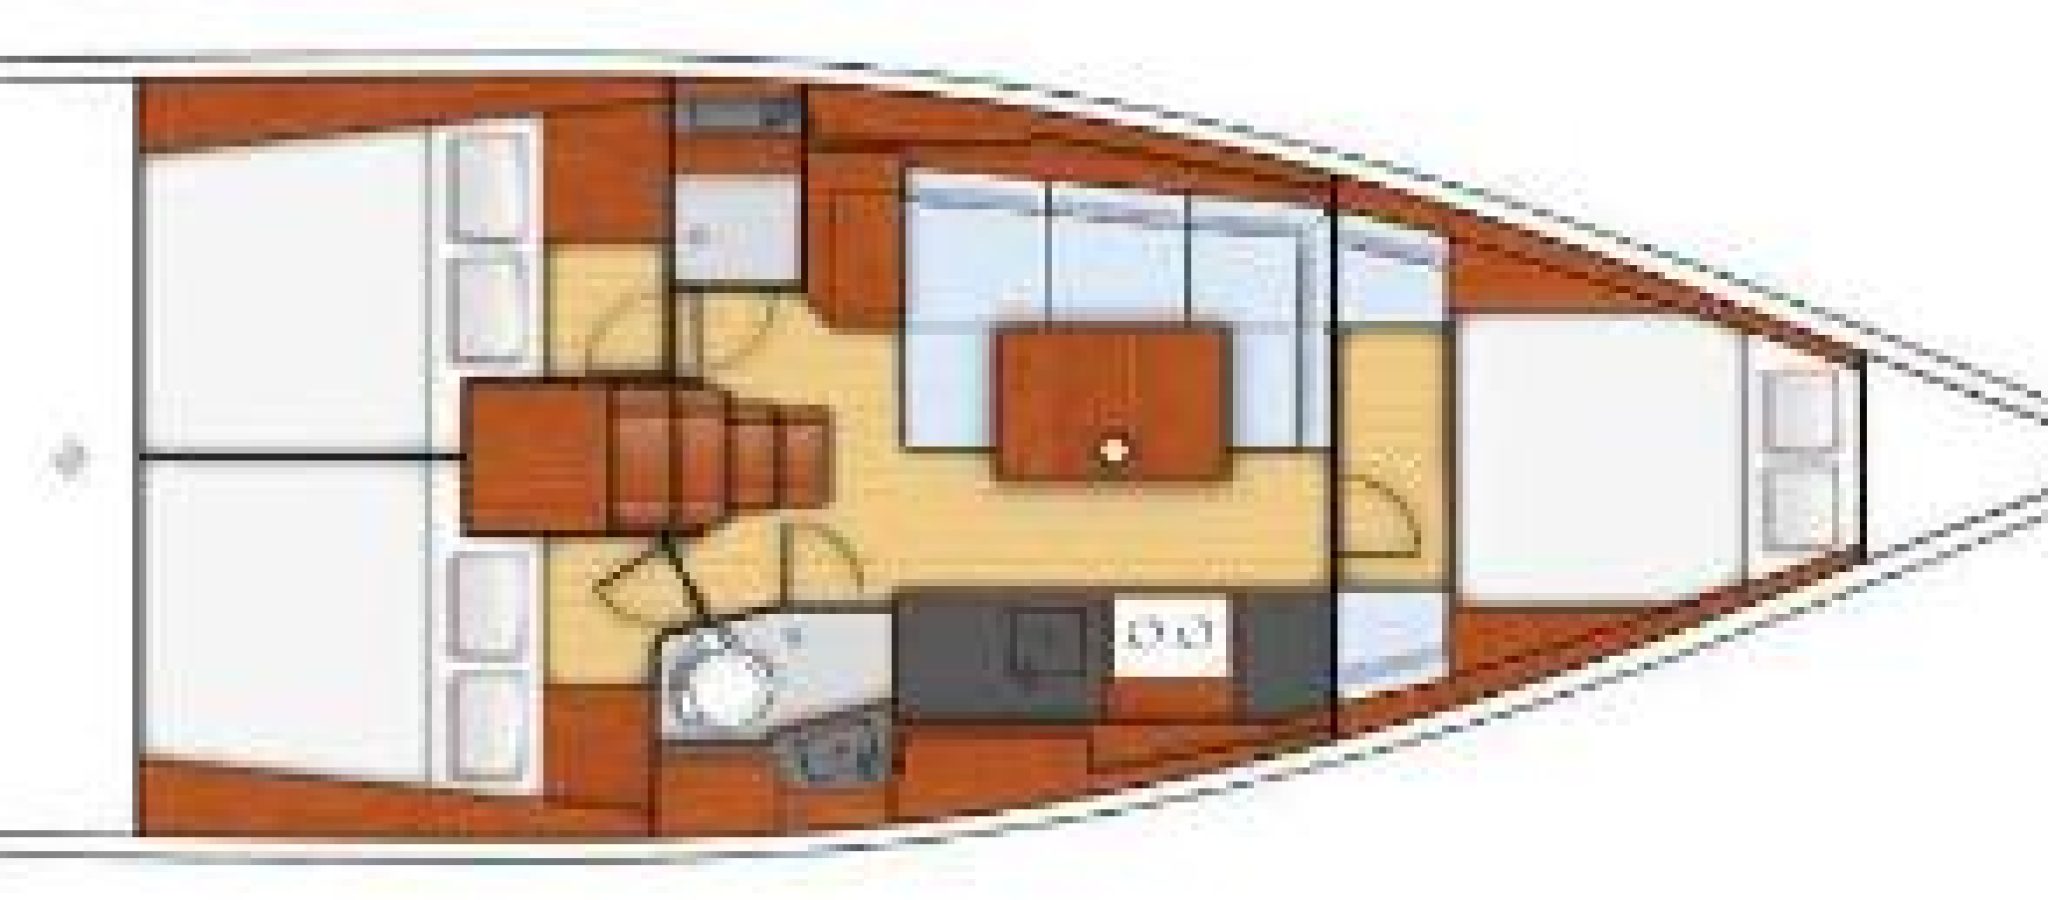 Oceanis-38-et-38.1-plan-3-cabines